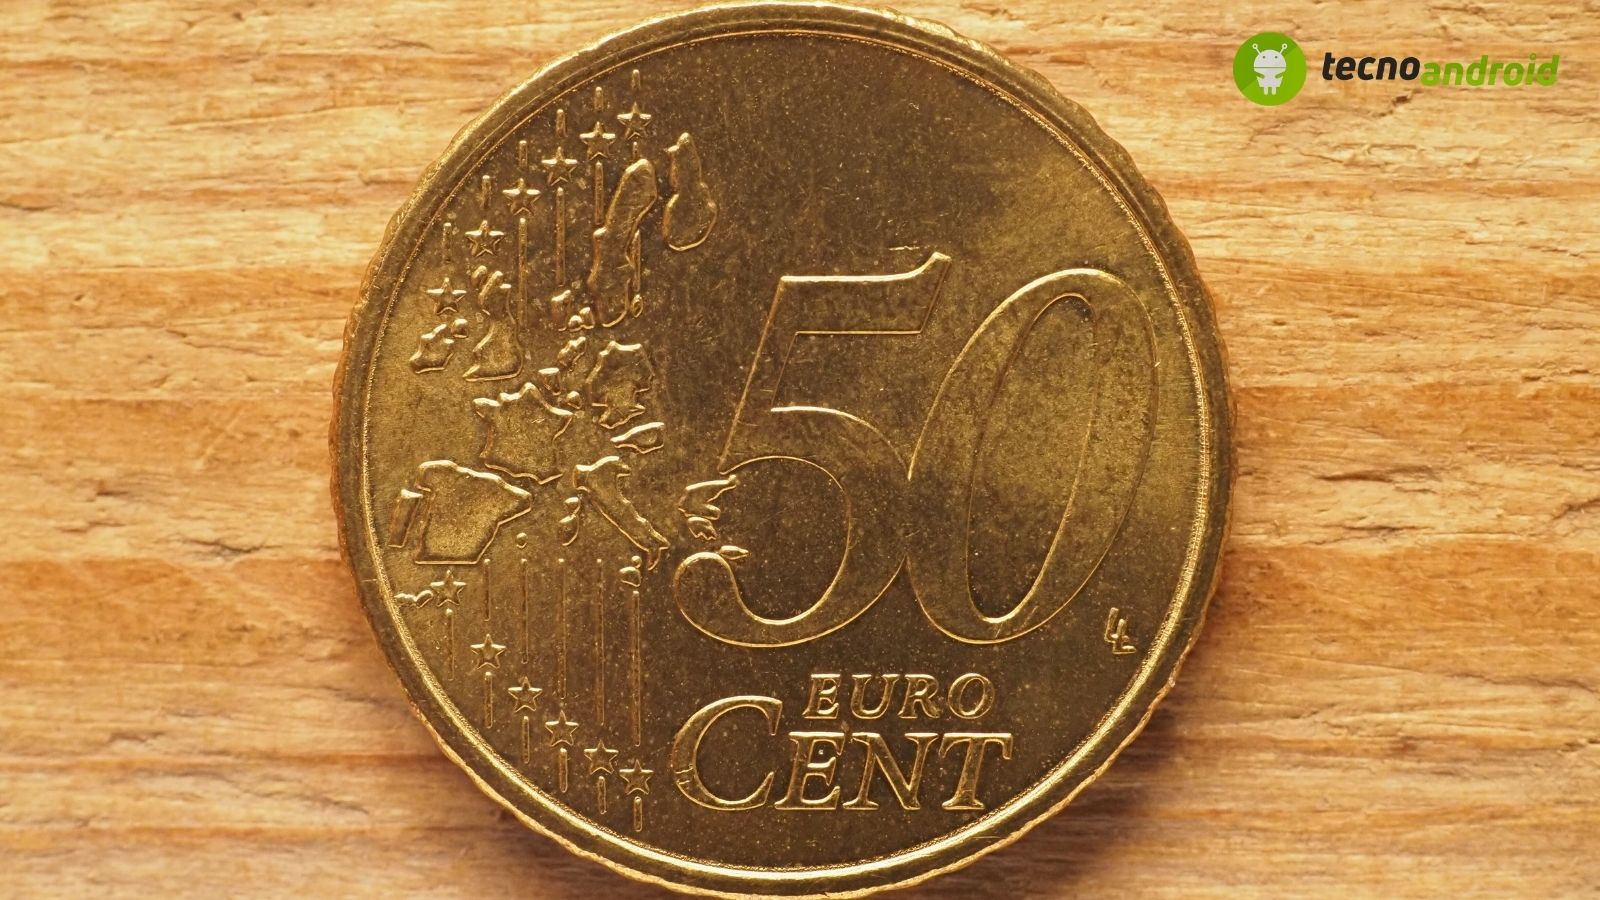 Questa moneta da 50 centesimi può farti guadagnare milioni